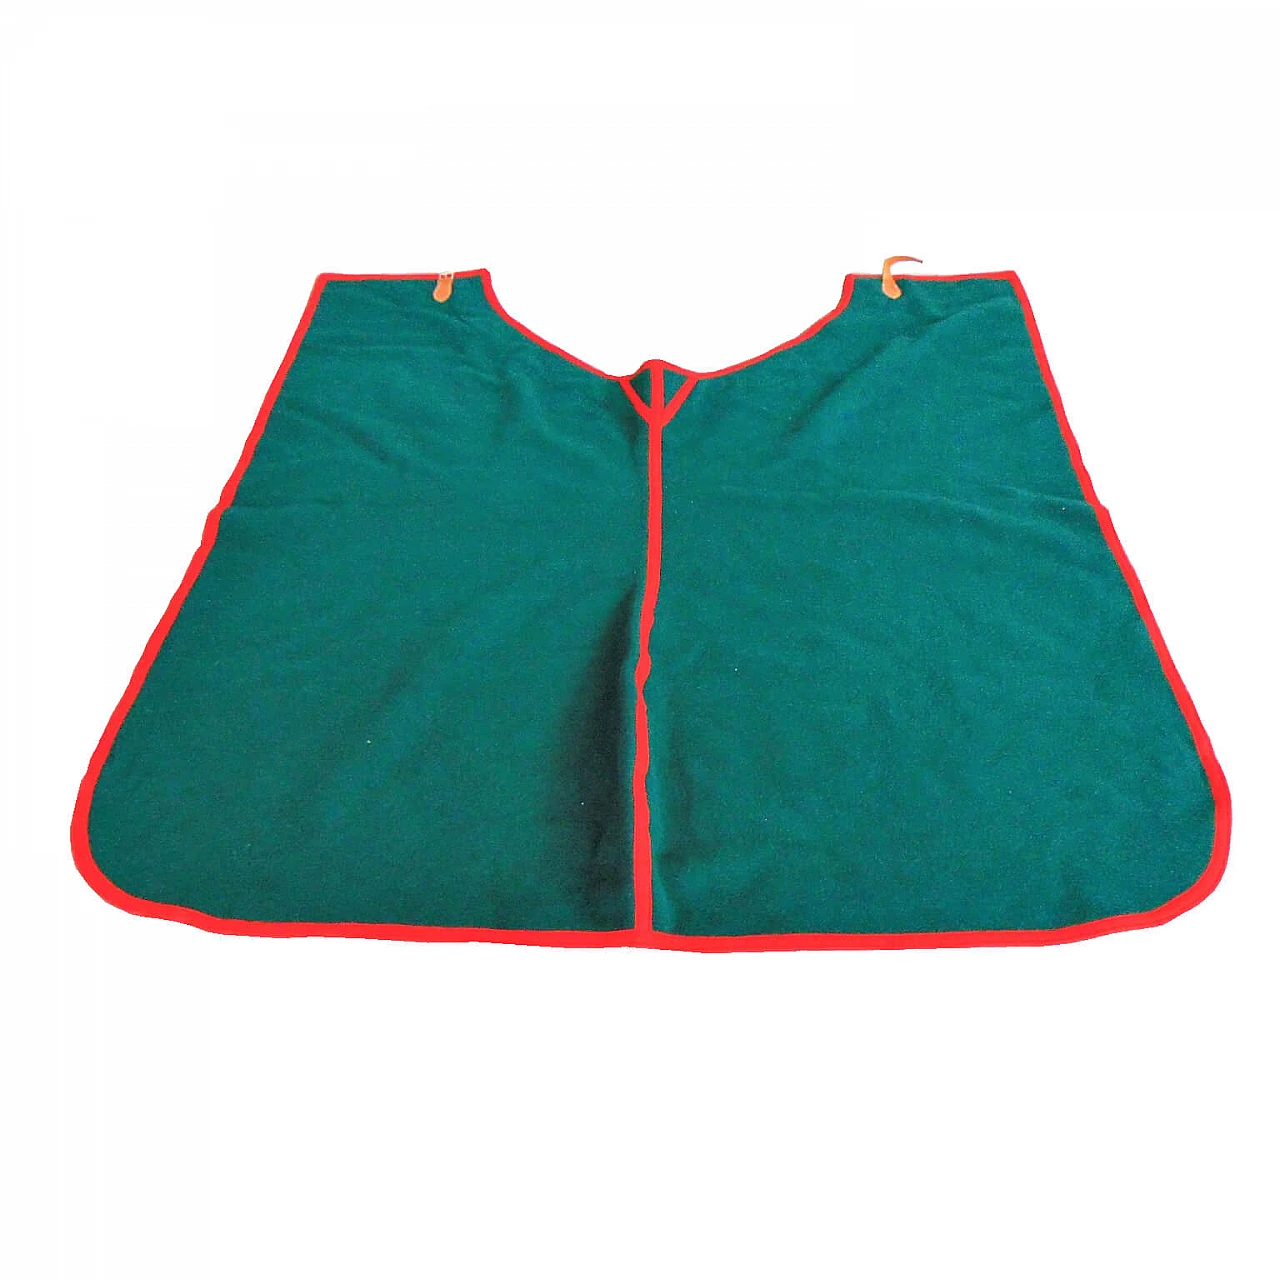 Coperta verde Selleria Pariani, realizzata a mano, pura lana vergine, profili rossi e cuoio, 1980 1072089